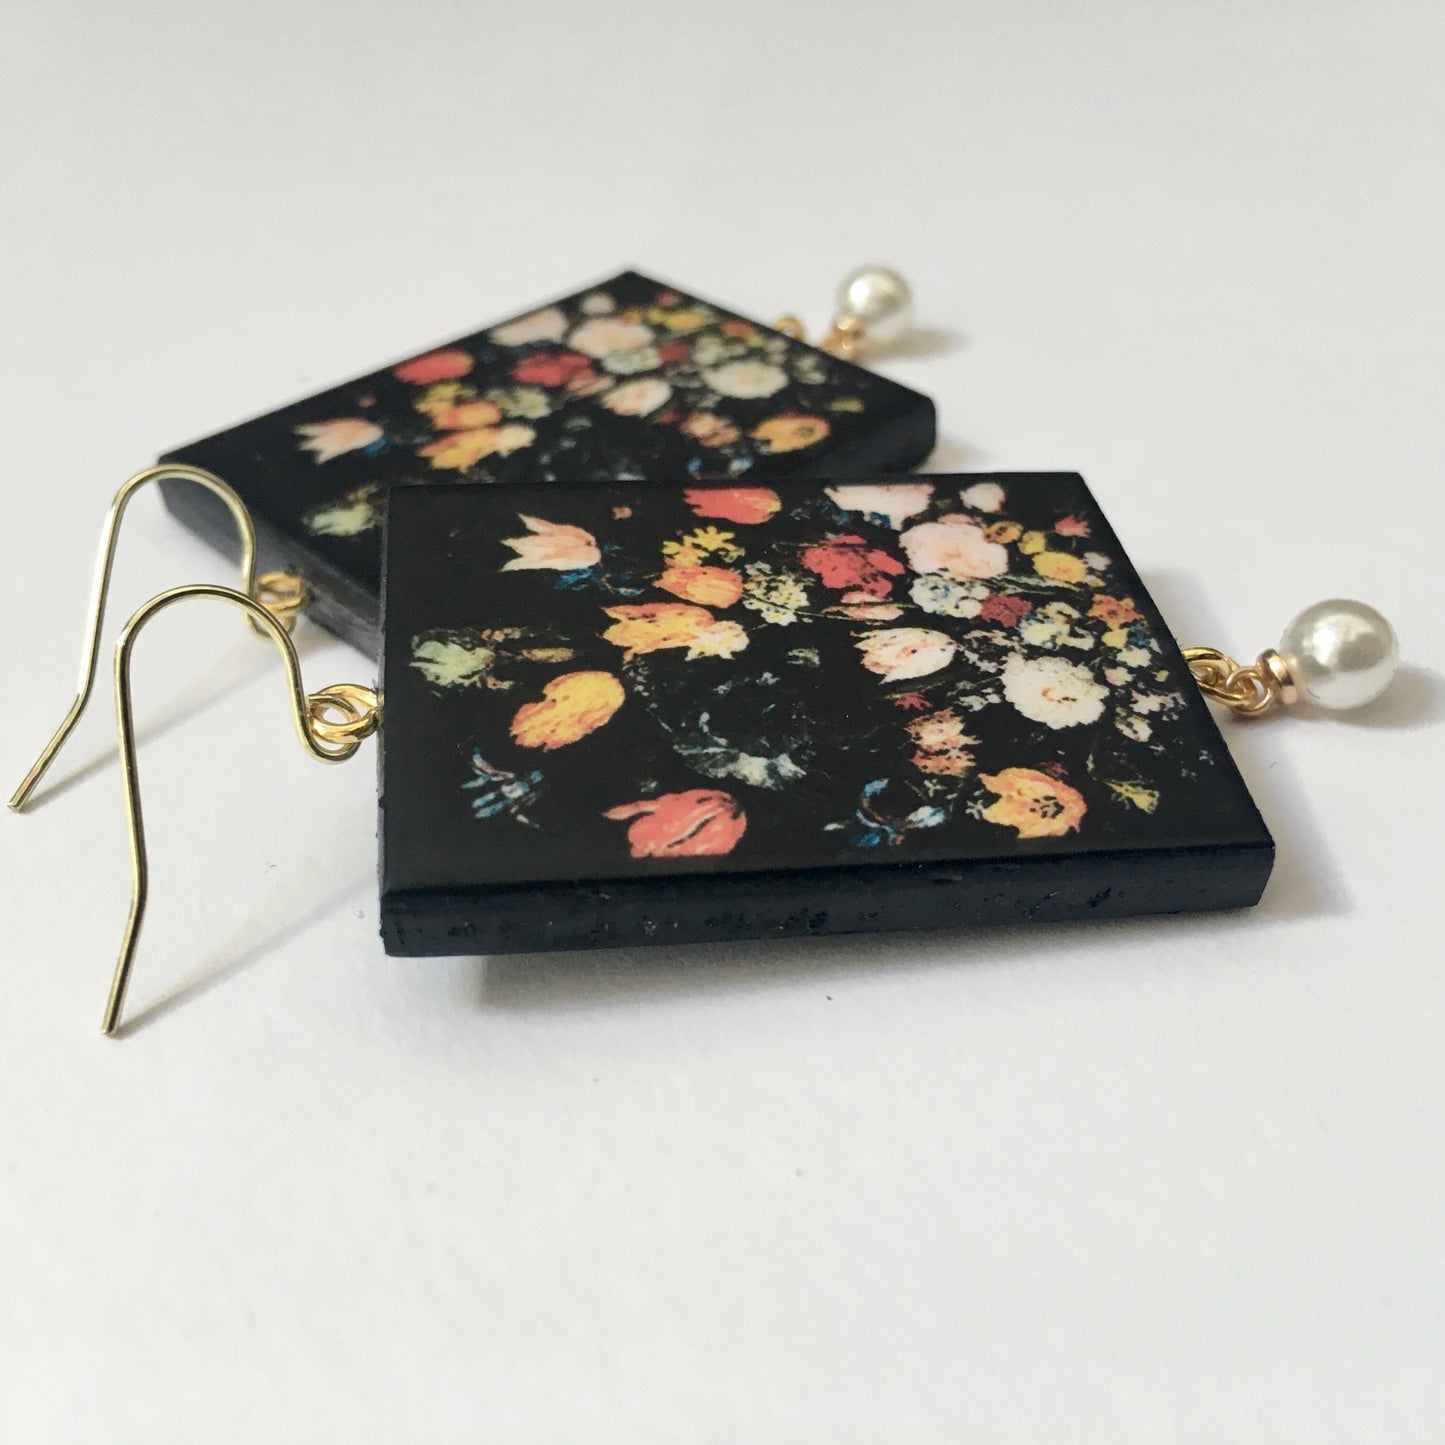 Bruegel flower earrings with pearls